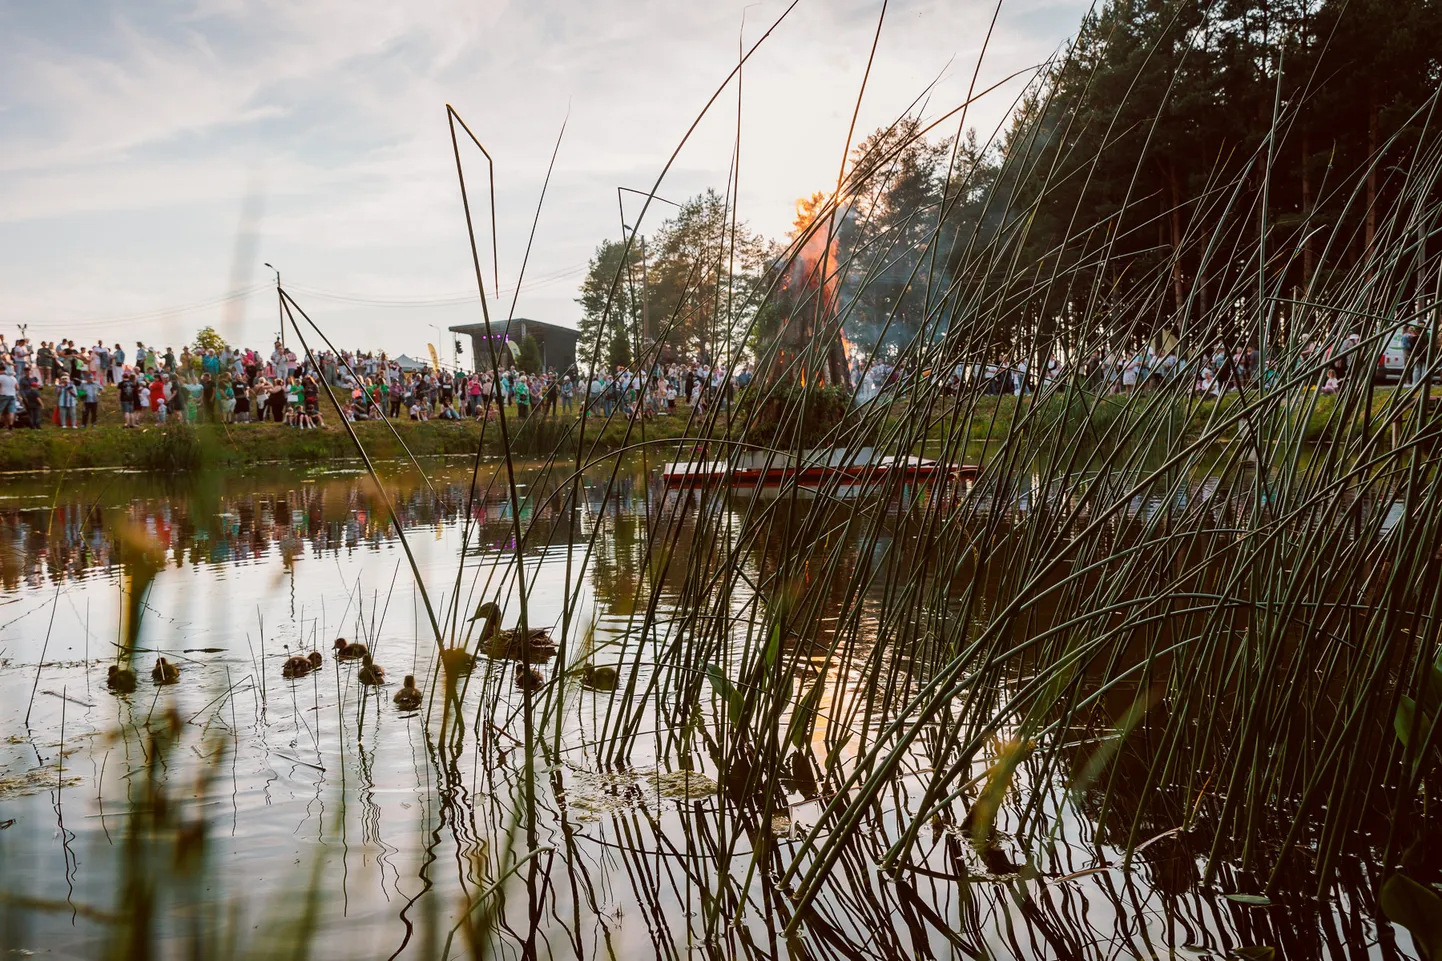 У пруда возле Ореховой горки в Нарве вечером 23 июня проходил большой народный праздник зажжения костра Яановой ночи.